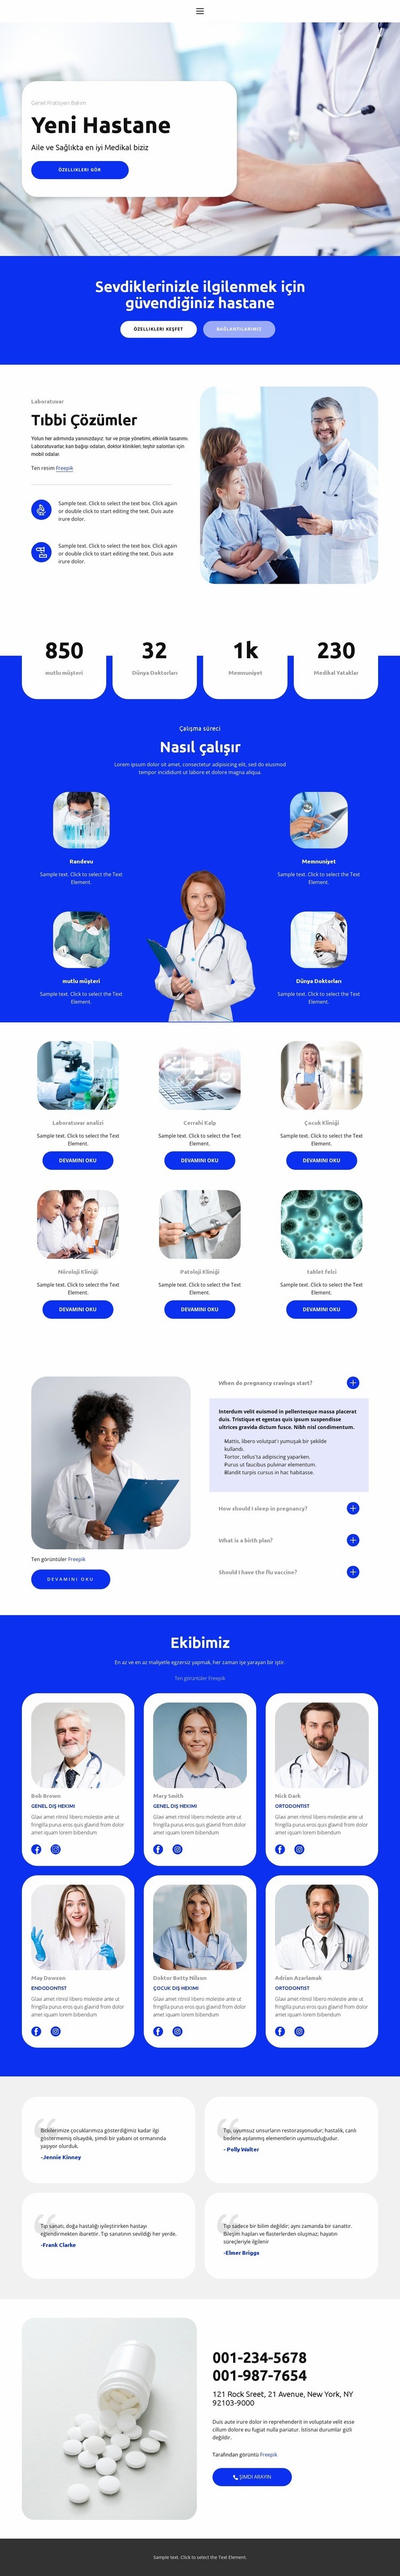 Yeni Hastane Web sitesi tasarımı